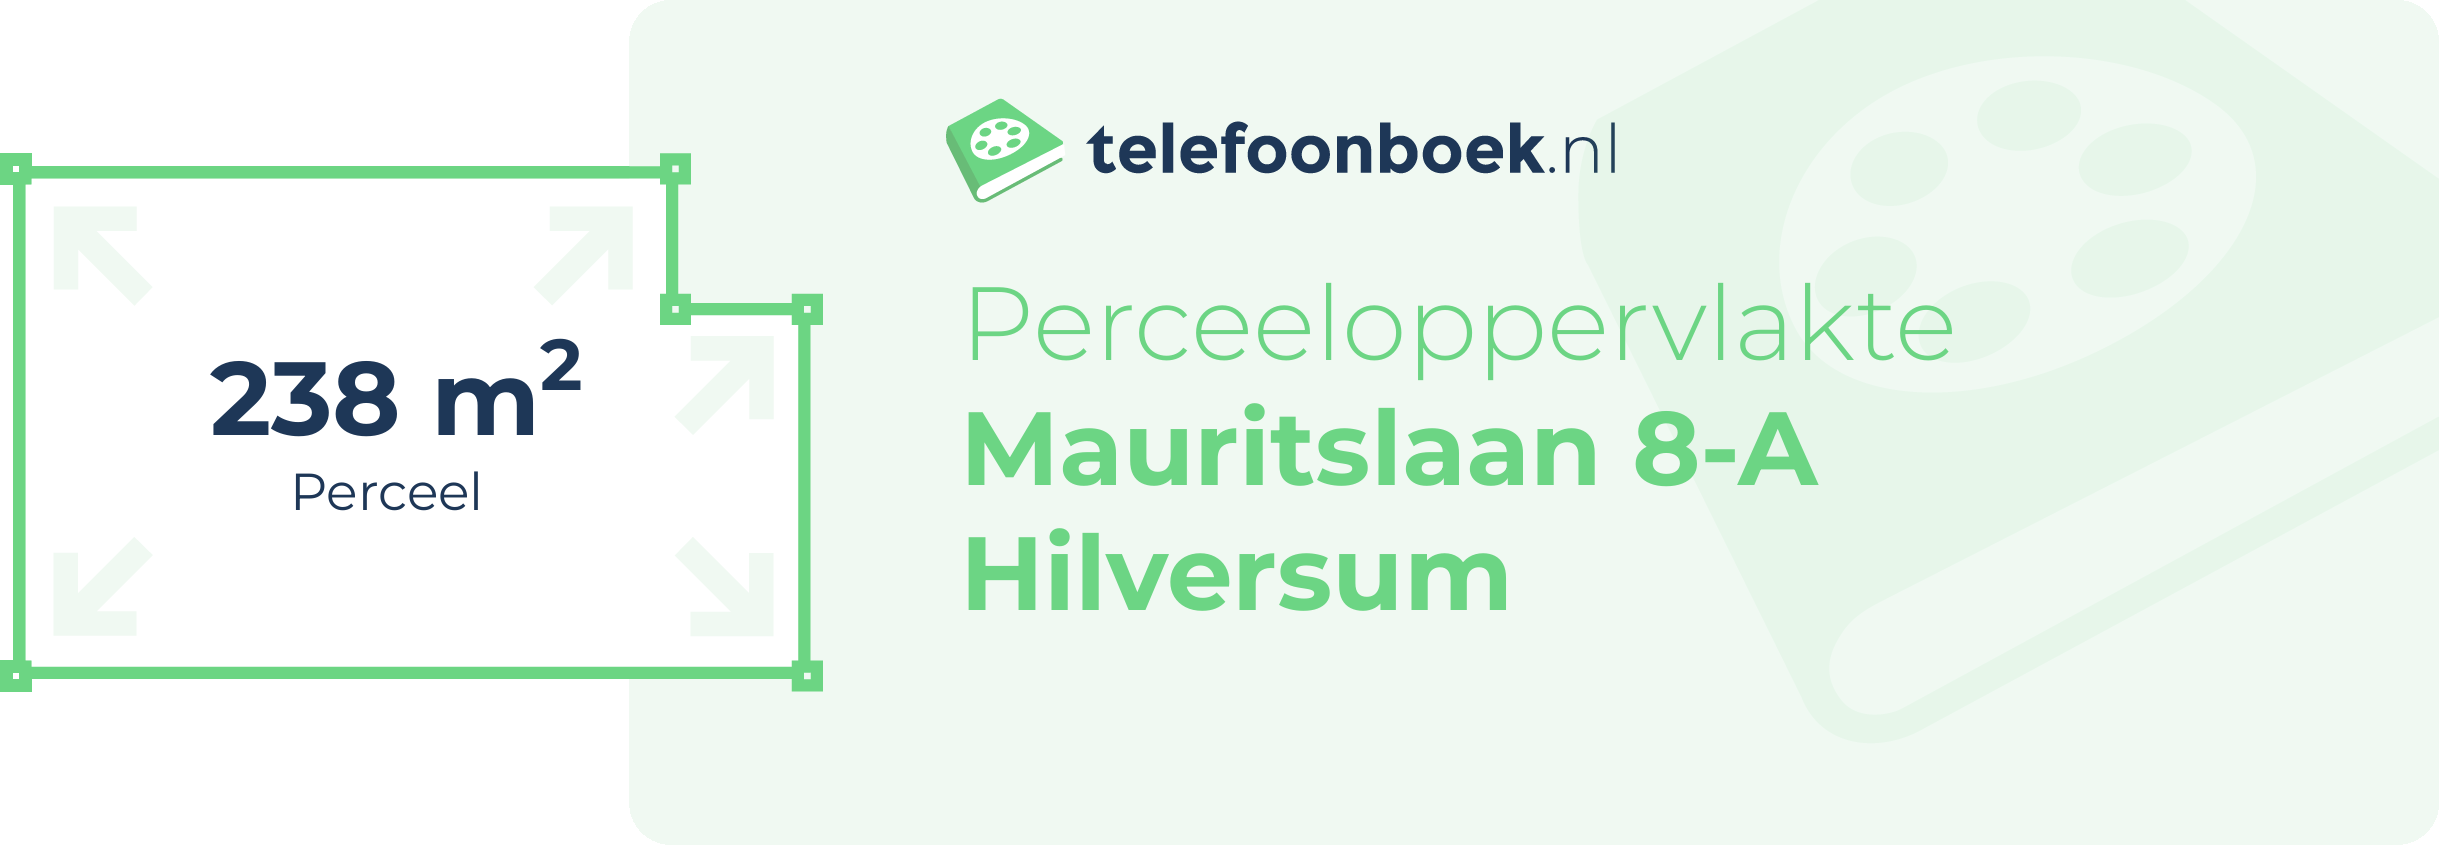 Perceeloppervlakte Mauritslaan 8-A Hilversum